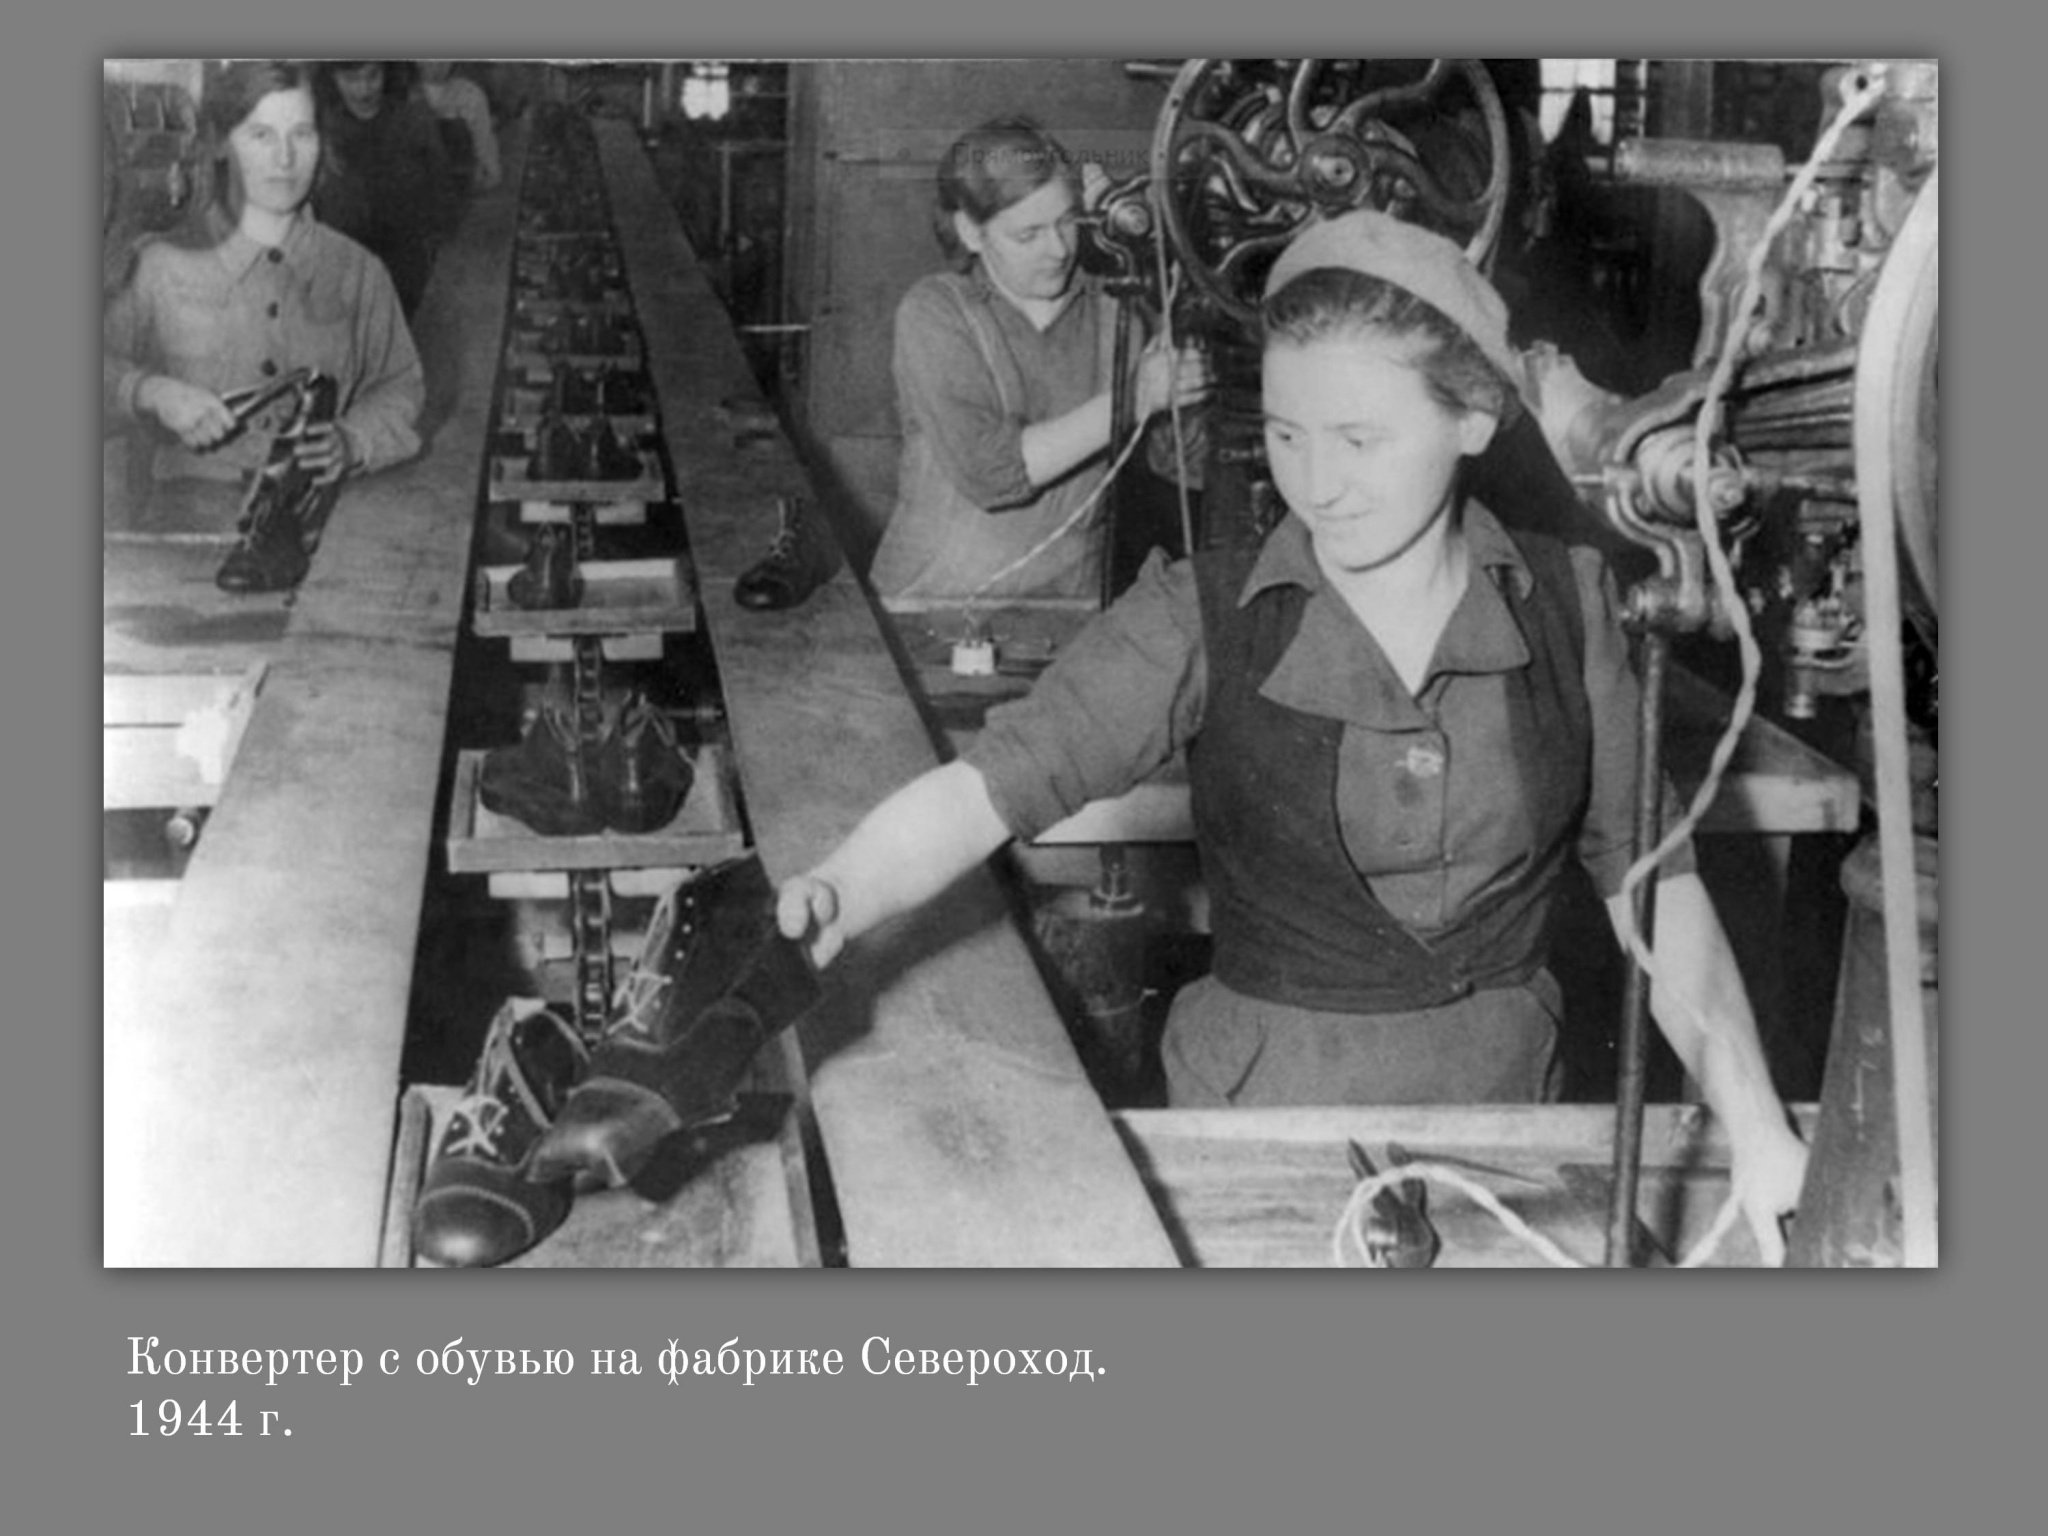 Ярославская промышленность в годы войны: